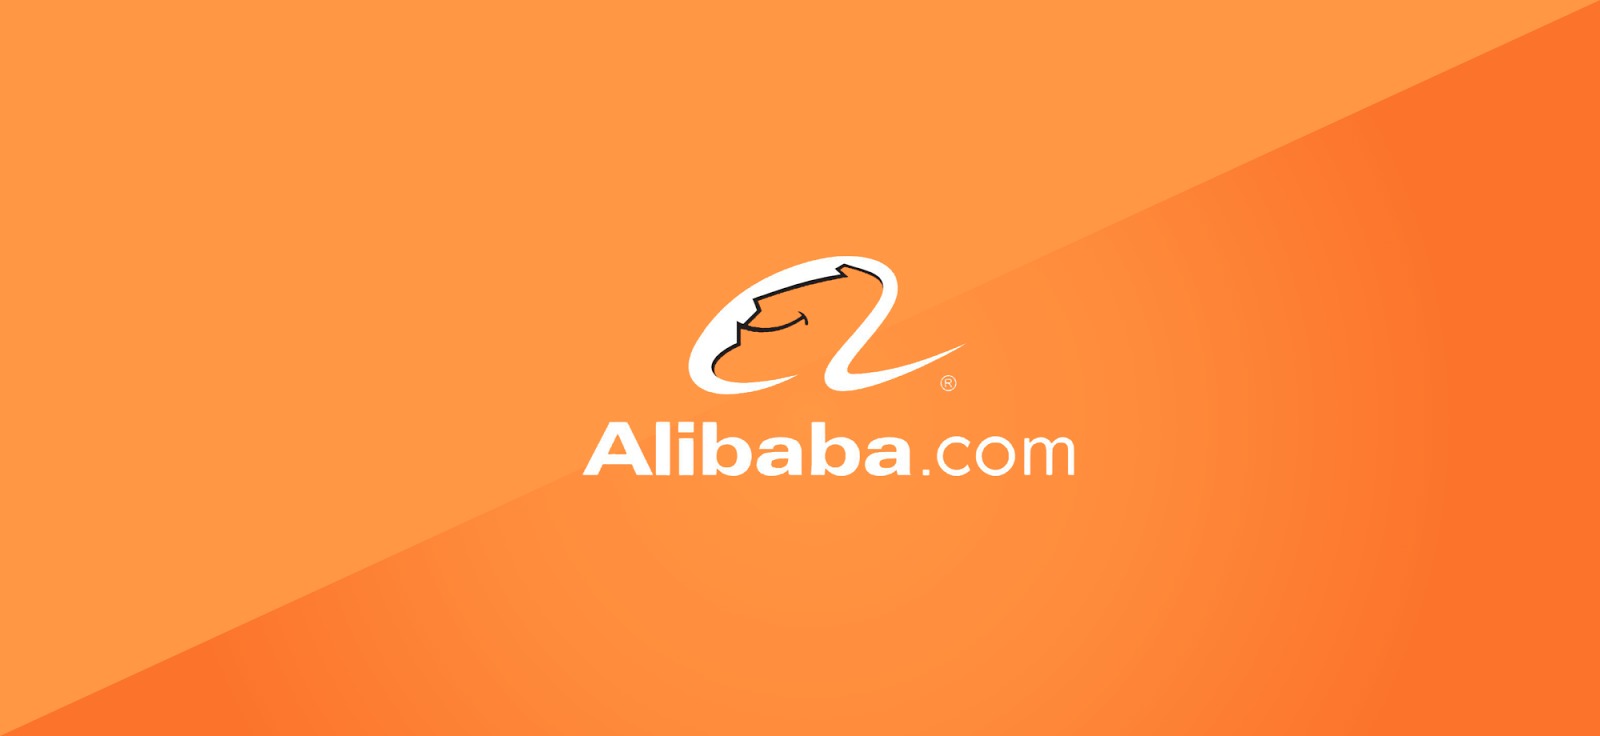 Comprar acciones Alibaba: cómo invertir en BABA en 2022